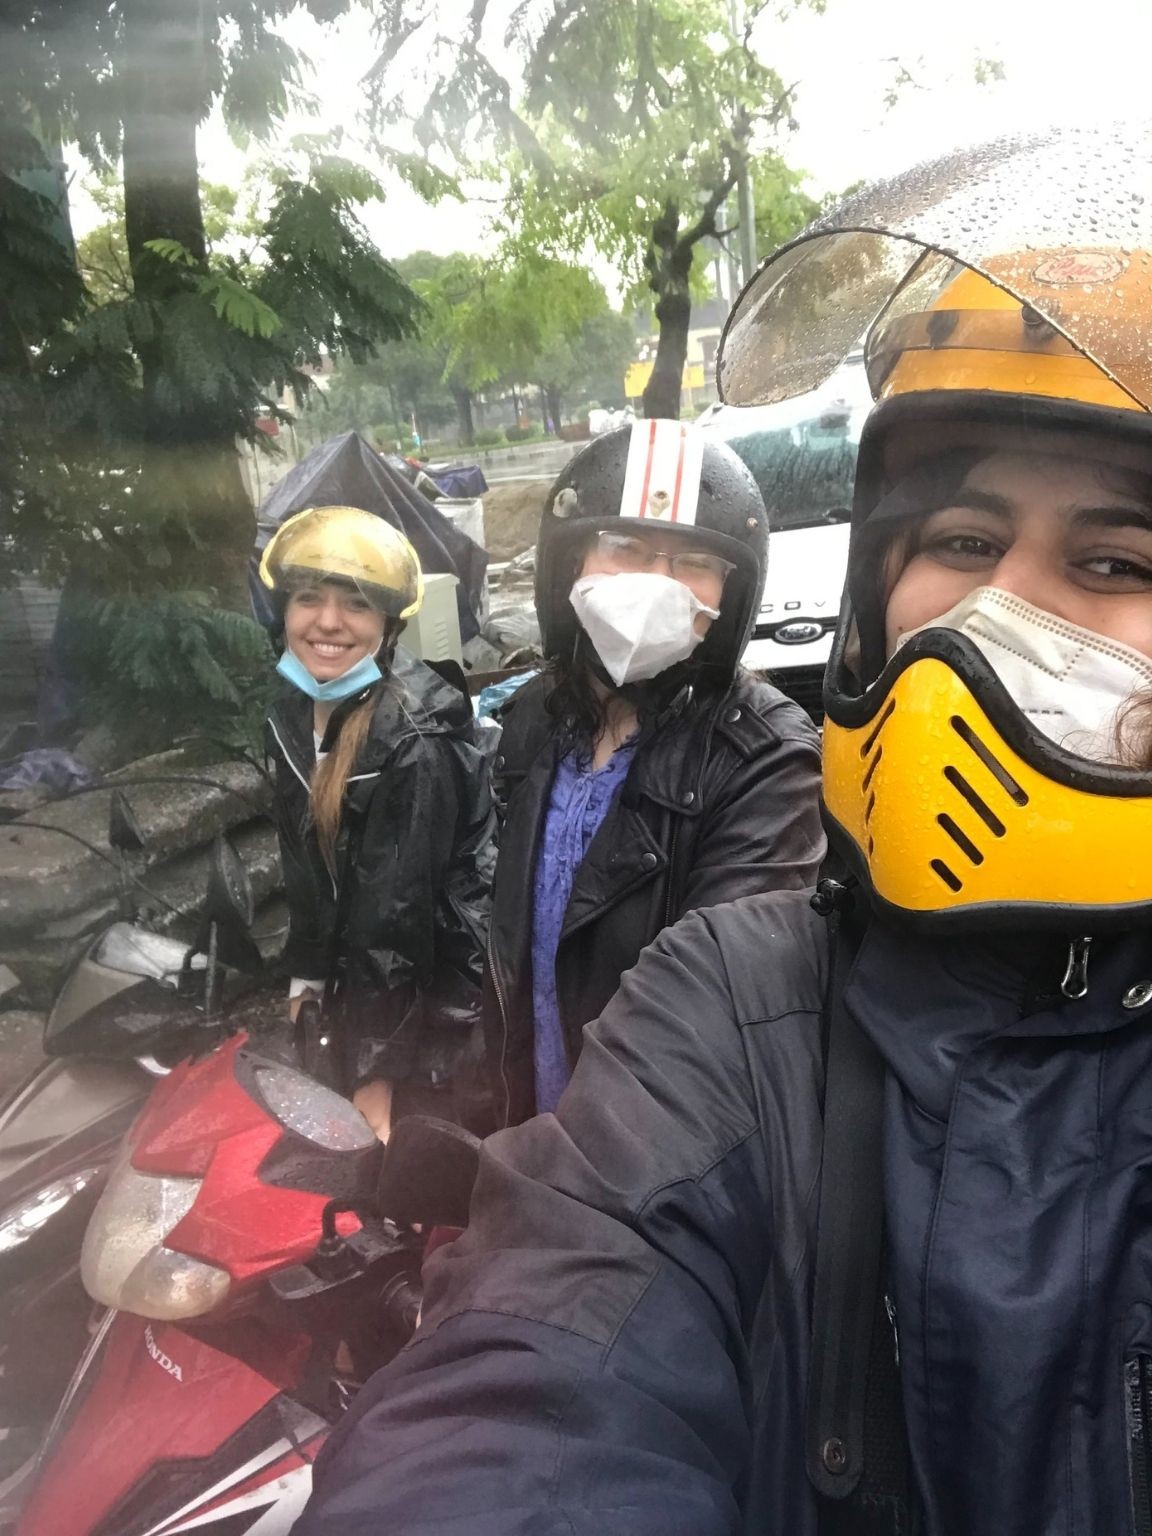 Expat Spotlight: Sarir Afarinesh - A Friendly Guide through Hanoi's Intense Traffic